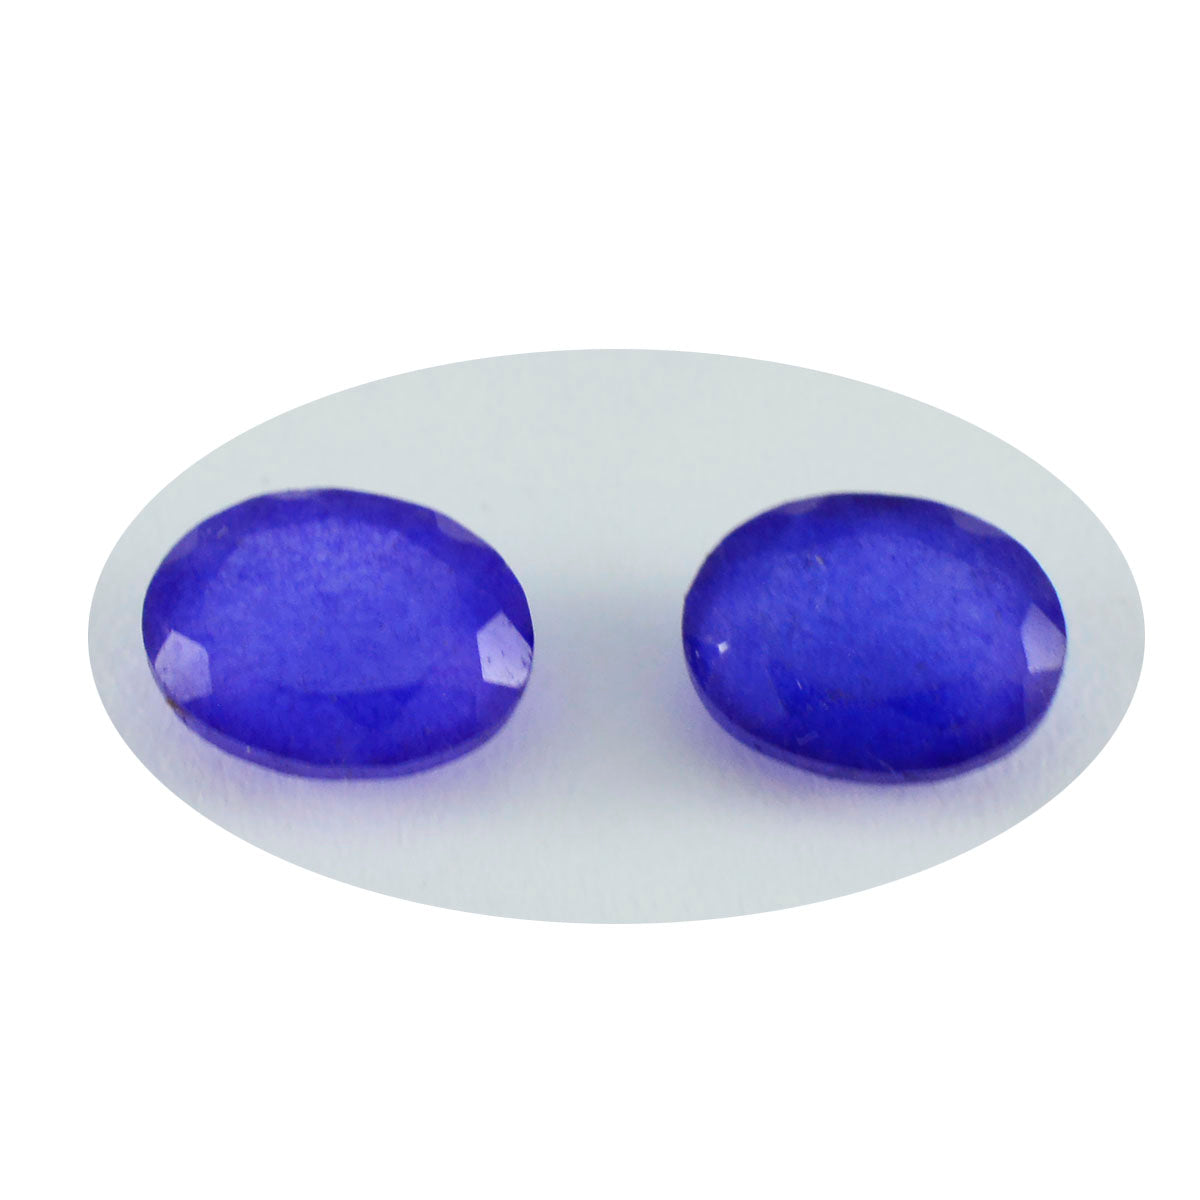 riyogems 1 pezzo di diaspro blu naturale sfaccettato 6x8 mm di forma ovale, gemma di bellissima qualità